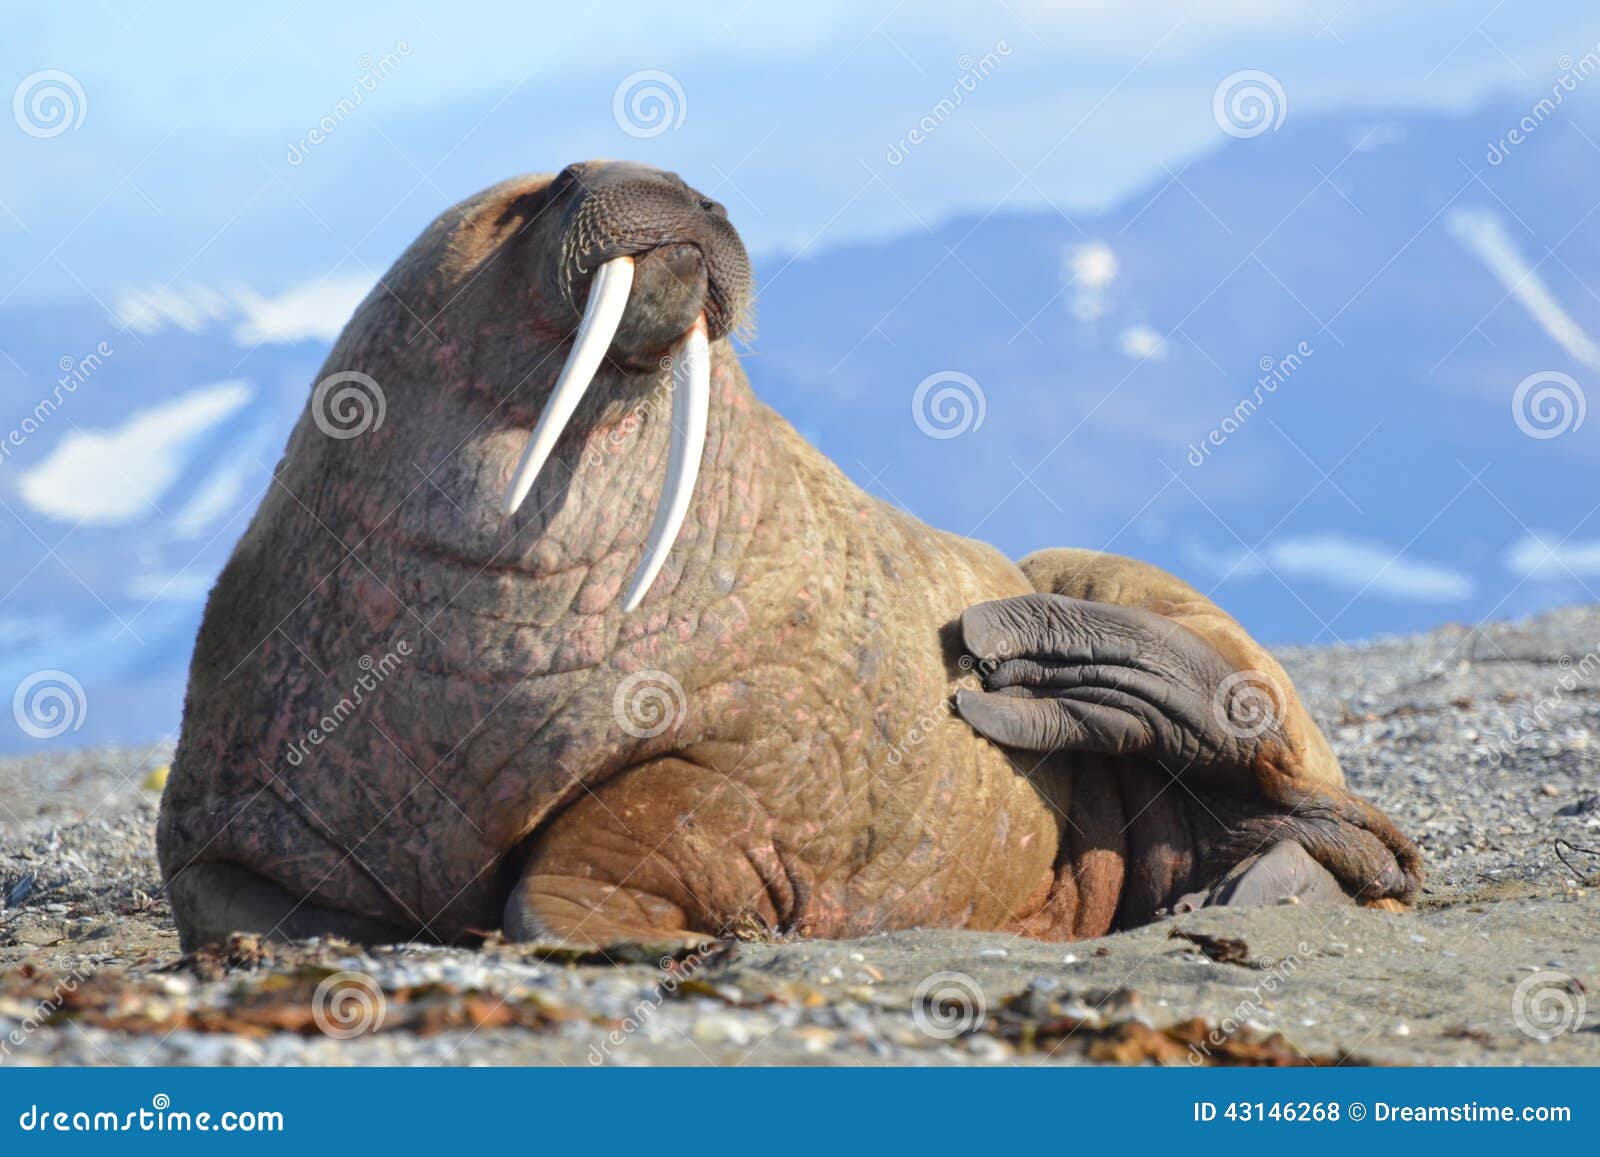 Walrus Walrus Facts